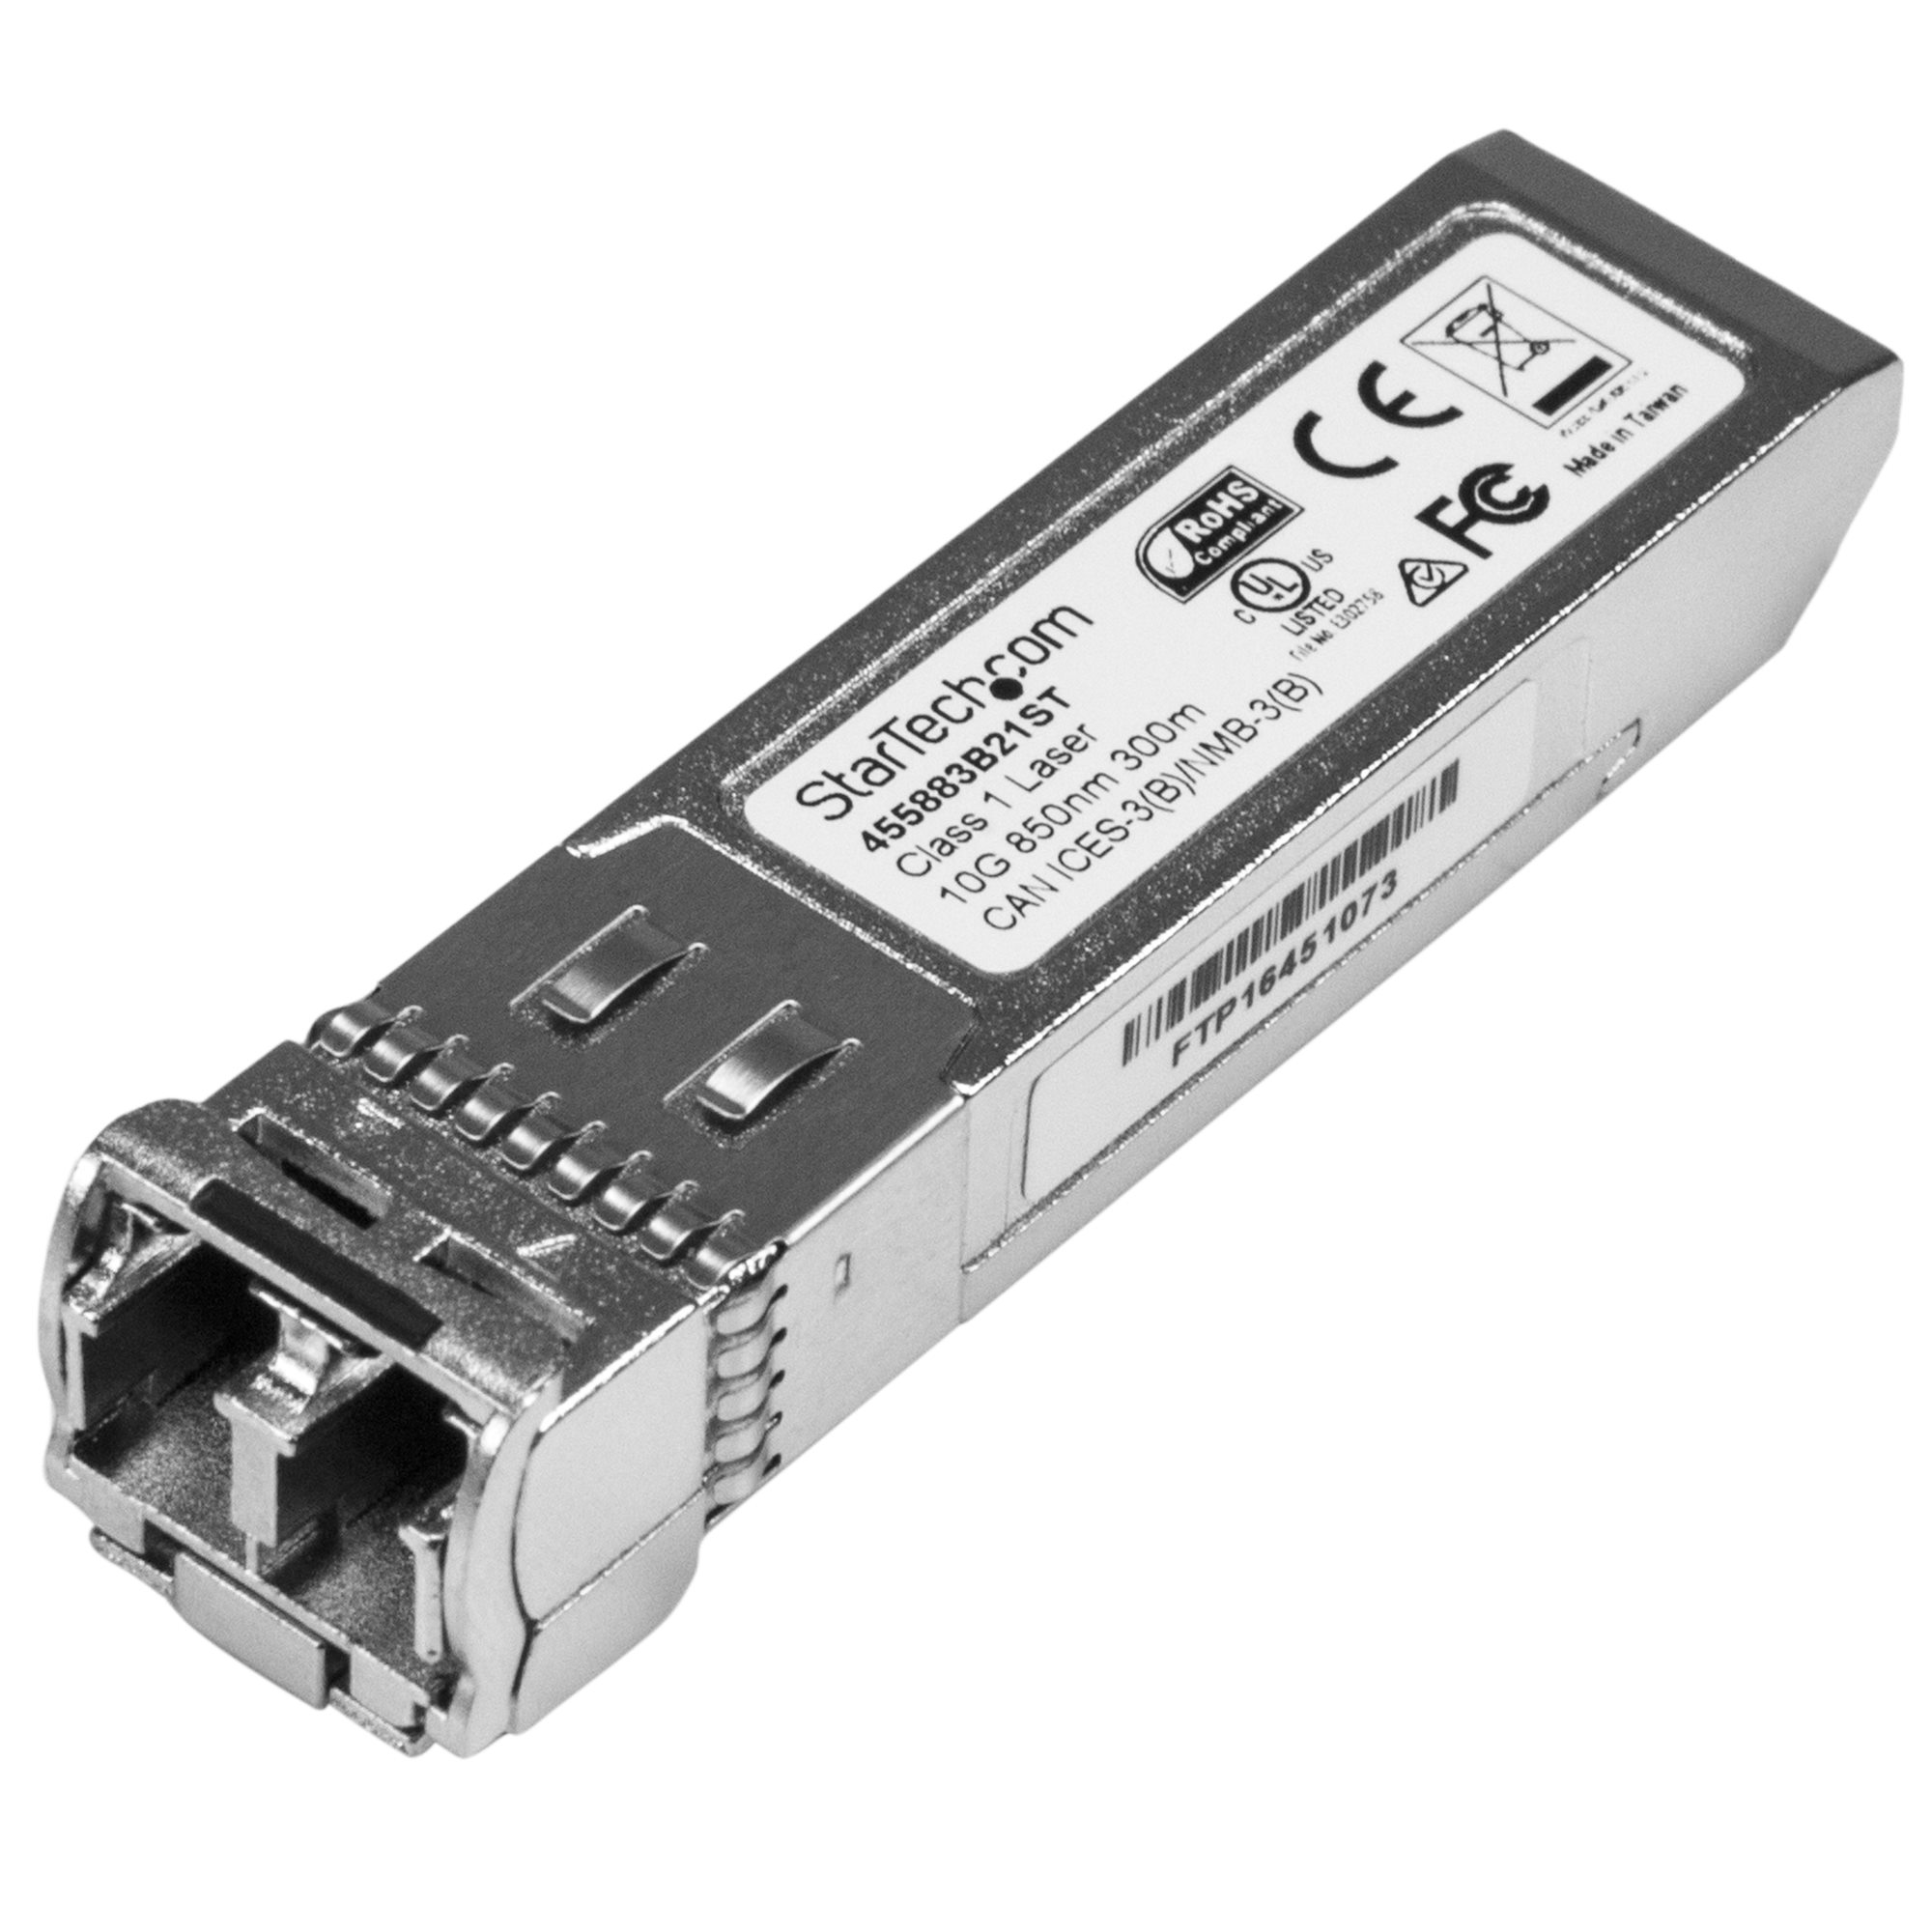 限定特価】 SFP モジュール HPE製品J9151A互換 10GBASE-LR準拠光トランシーバ 1310nm DDM  J9151A-ST